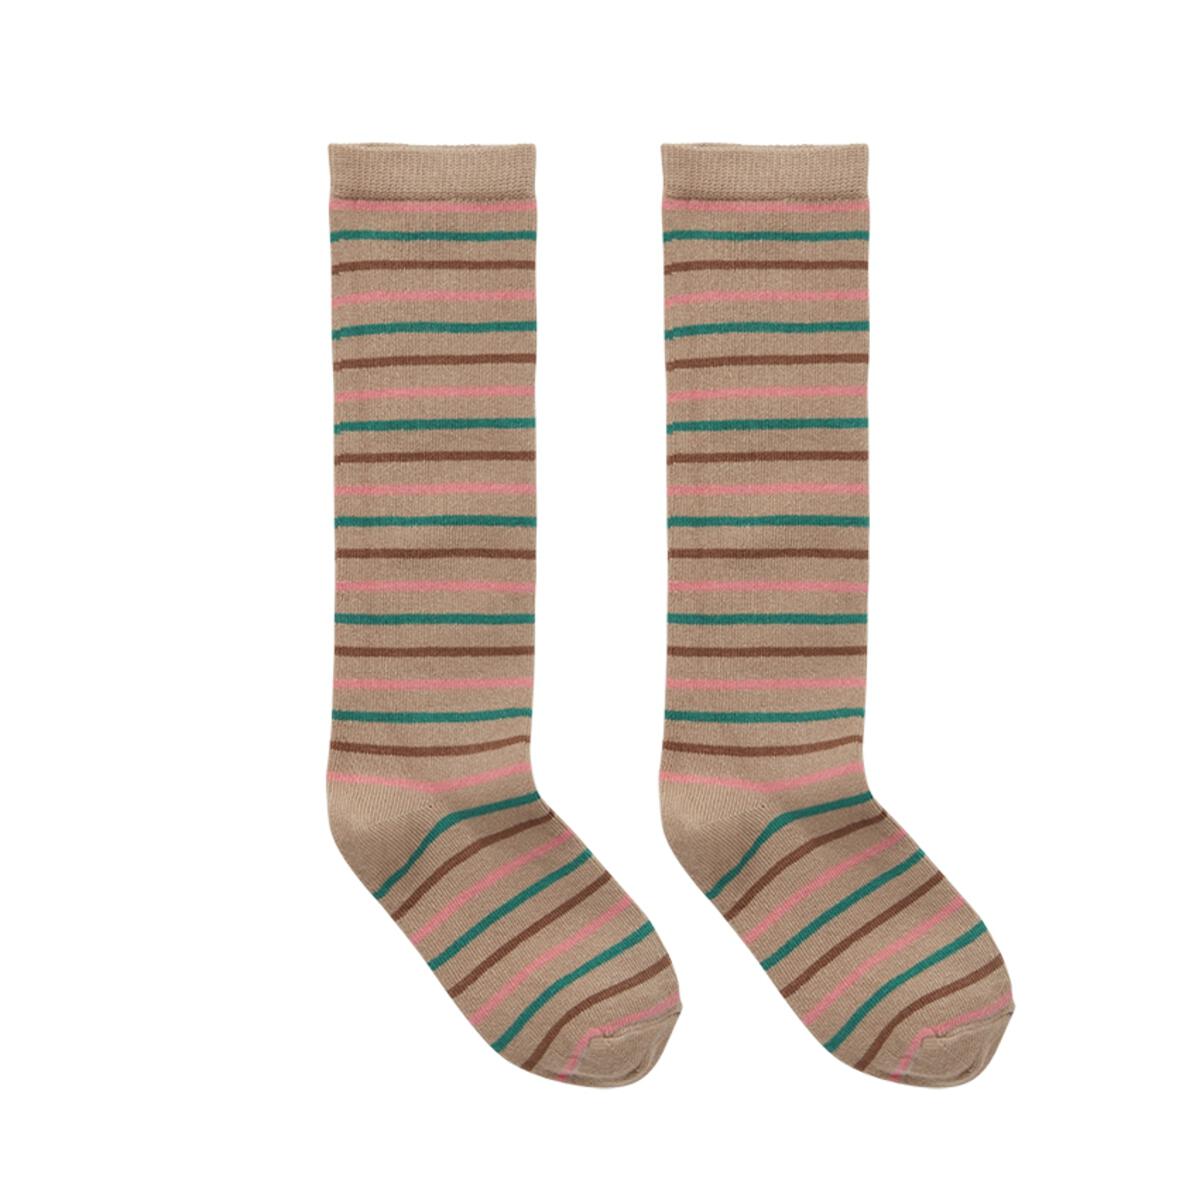 Socks stripes, Sproet & Sprout Hedgehog & Deer